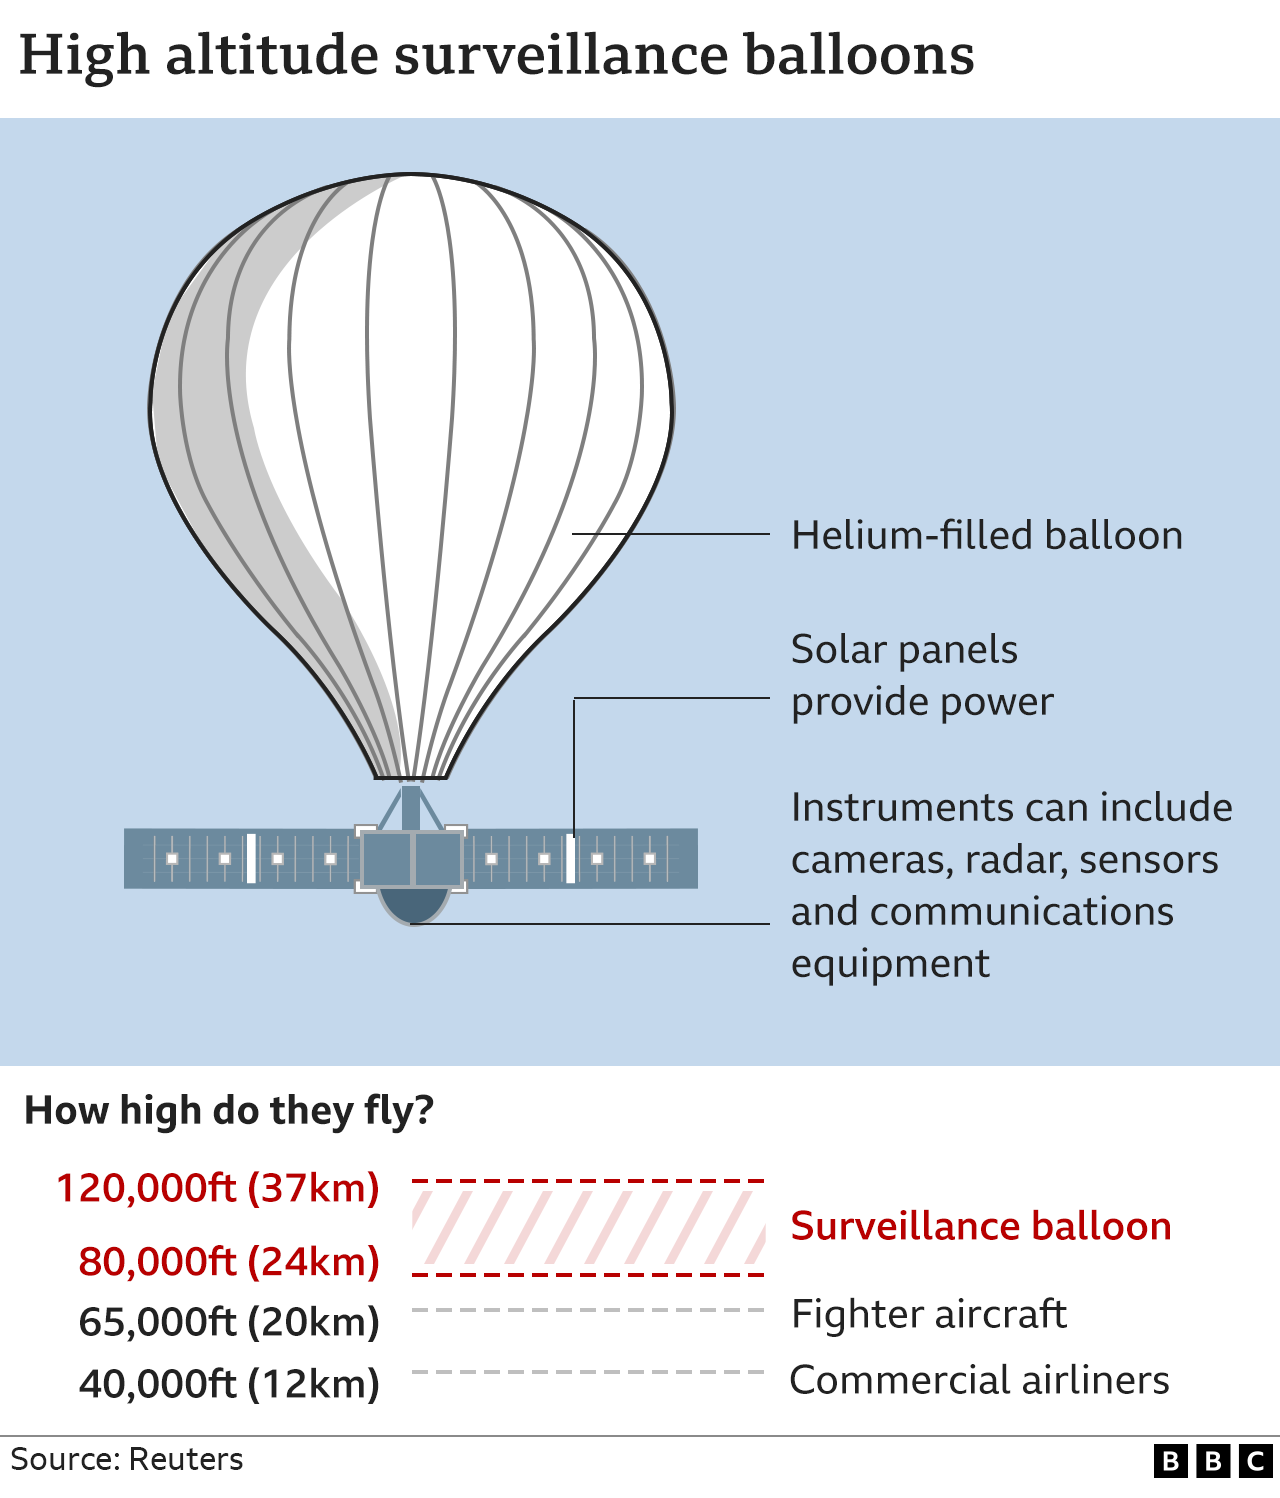 กราฟิกของบอลลูนระดับความสูง แสดงบอลลูนที่เติมก๊าซฮีเลียม แผงเซลล์แสงอาทิตย์ และช่องใส่เครื่องมือ ซึ่งอาจรวมถึงกล้อง เรดาร์ และอุปกรณ์สื่อสาร  พวกเขาสามารถบินได้ที่ความสูง 80,000 ฟุต-120,000 ฟุต ซึ่งสูงกว่าเครื่องบินรบและเครื่องบินพาณิชย์